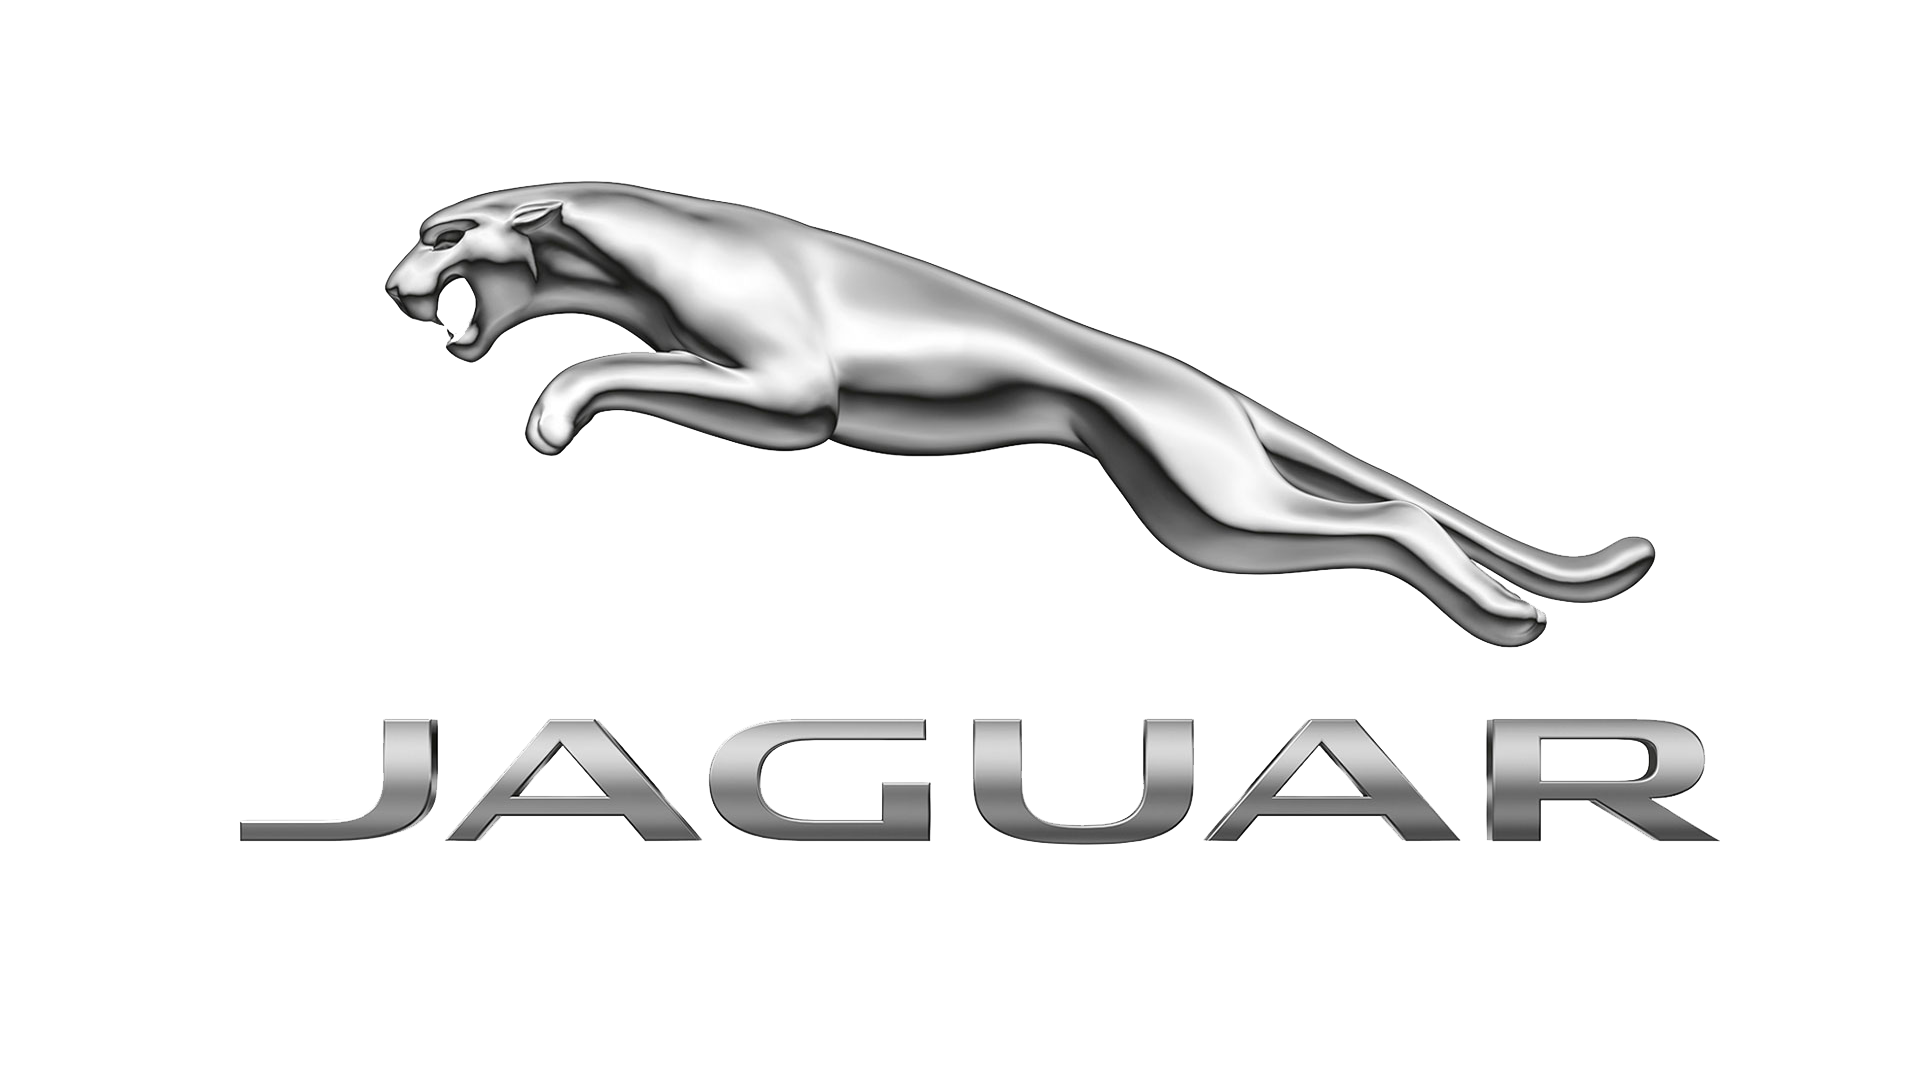 El Jaguar I-PACE fue elegido como el vehículo de concepto más significativo del 2017